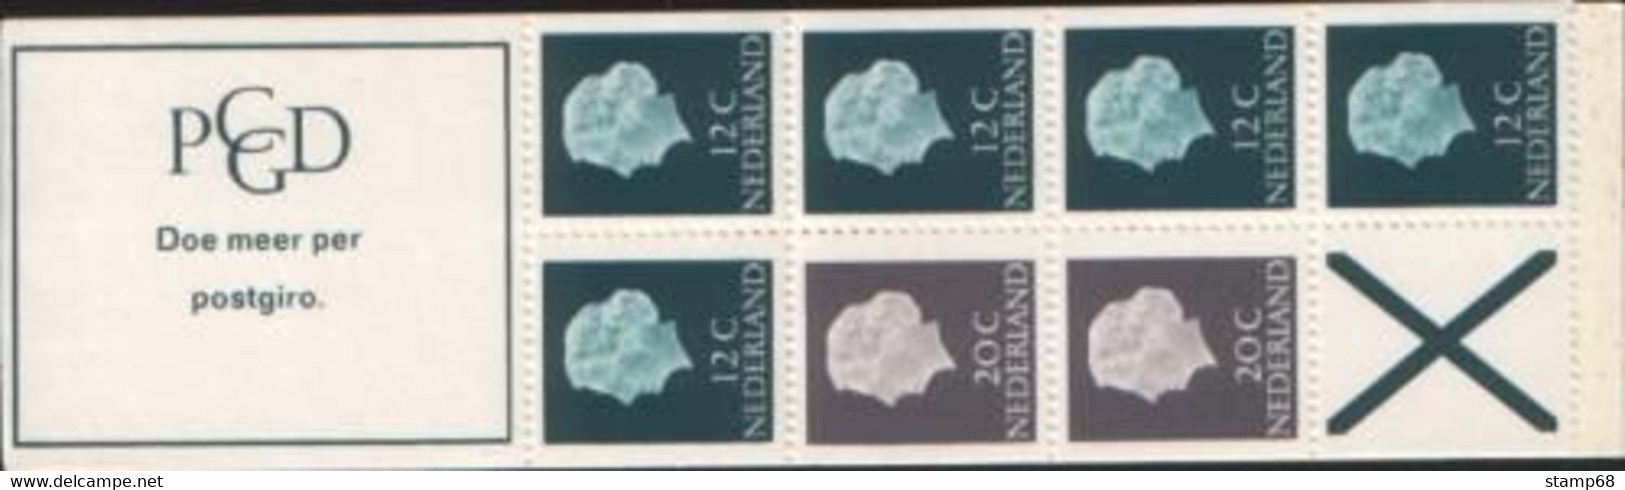 Nederland NVPH PB7b Postzegelboekje 1967 MNH Postfris - Markenheftchen Und Rollen